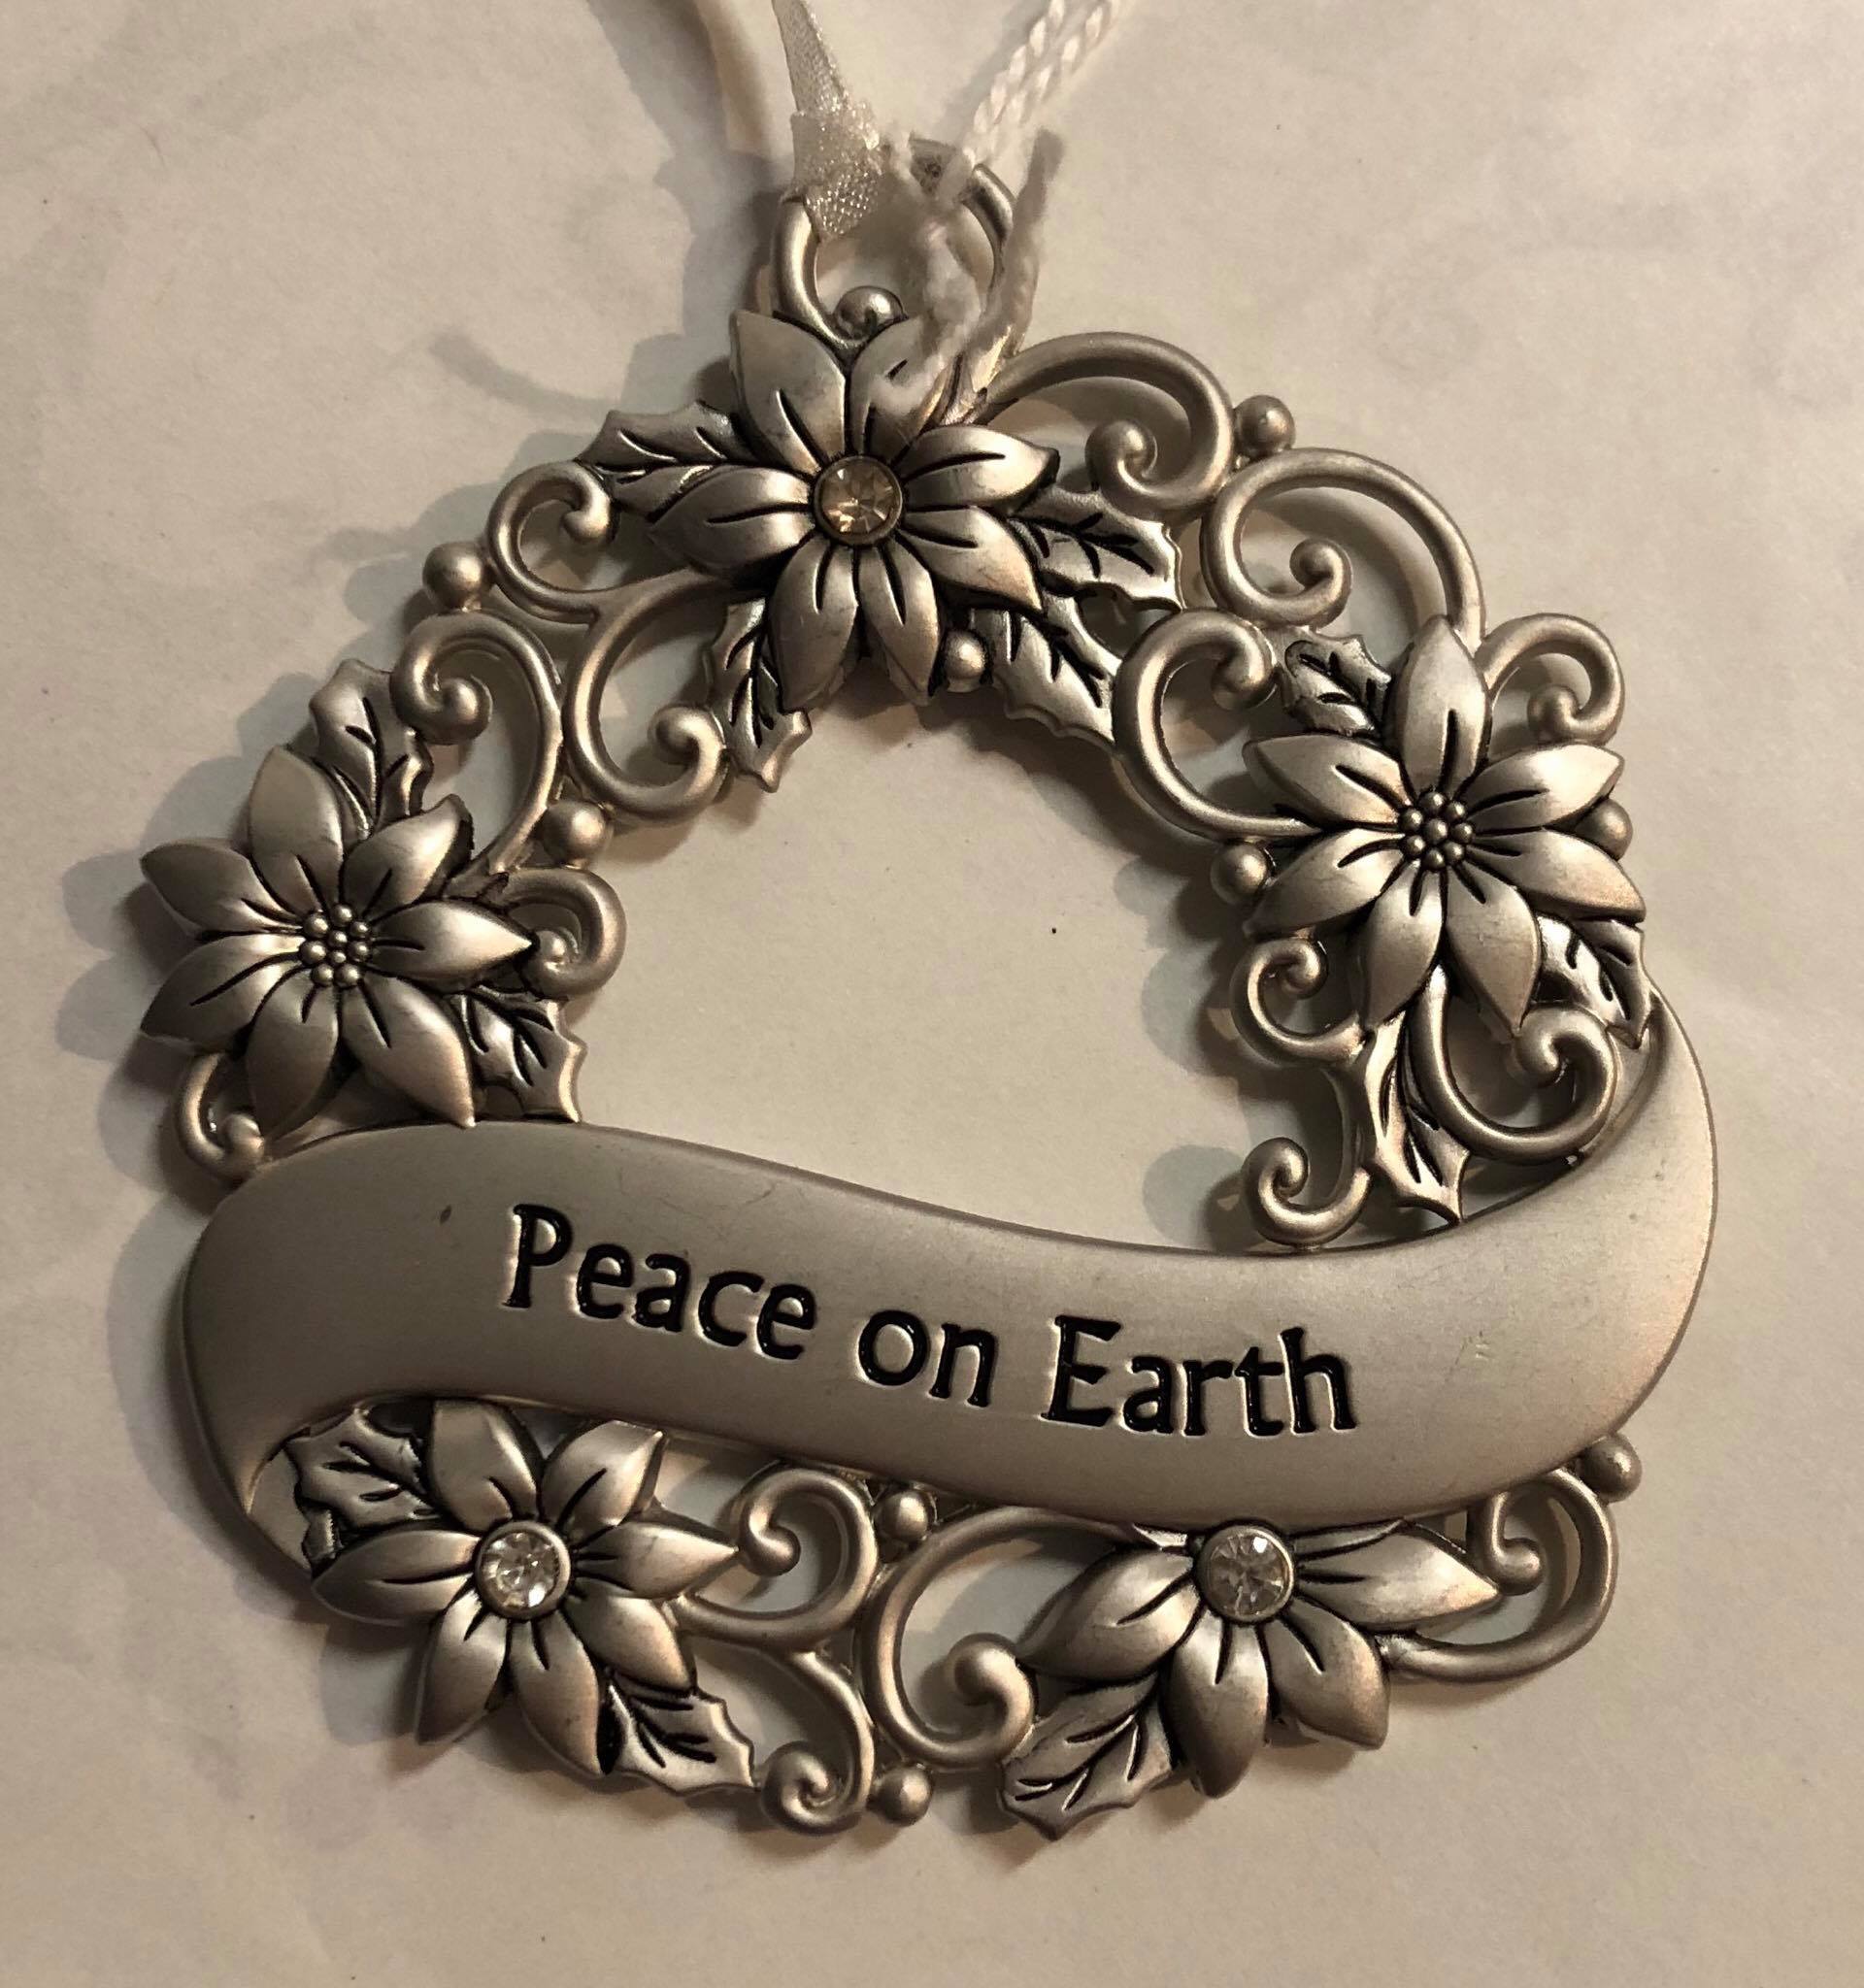 Wreath Tree Ornament "Peace on Earth"